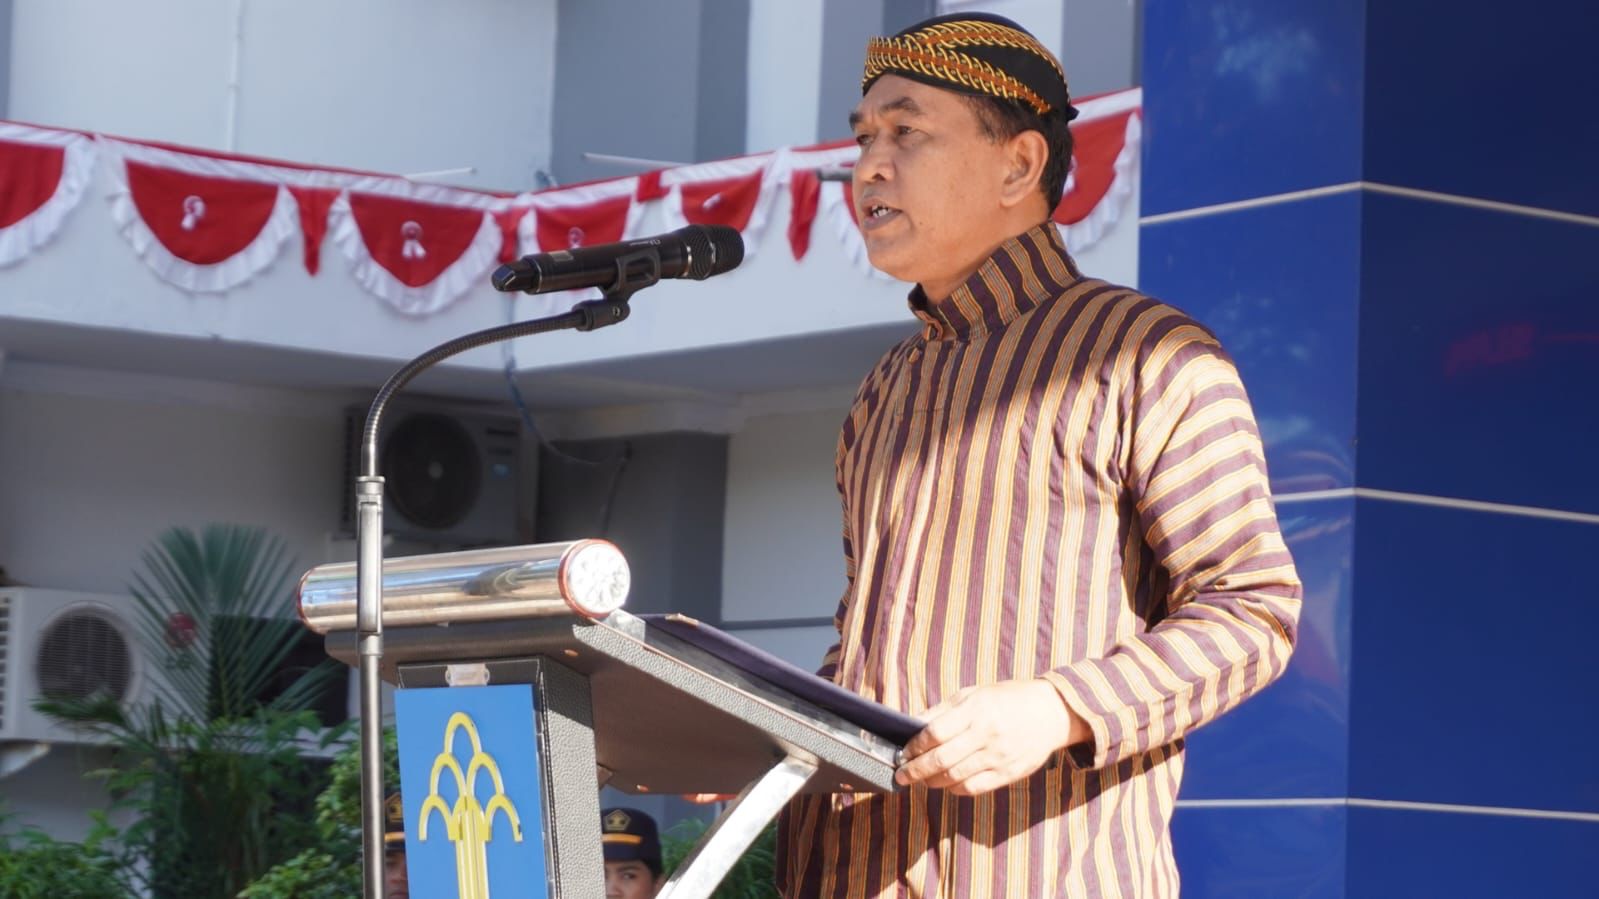 Kemenkumham Sulawesi Barat laksanakan Upacara HUT ke-78 RI Tahun 2023 (dok. Istimewa)